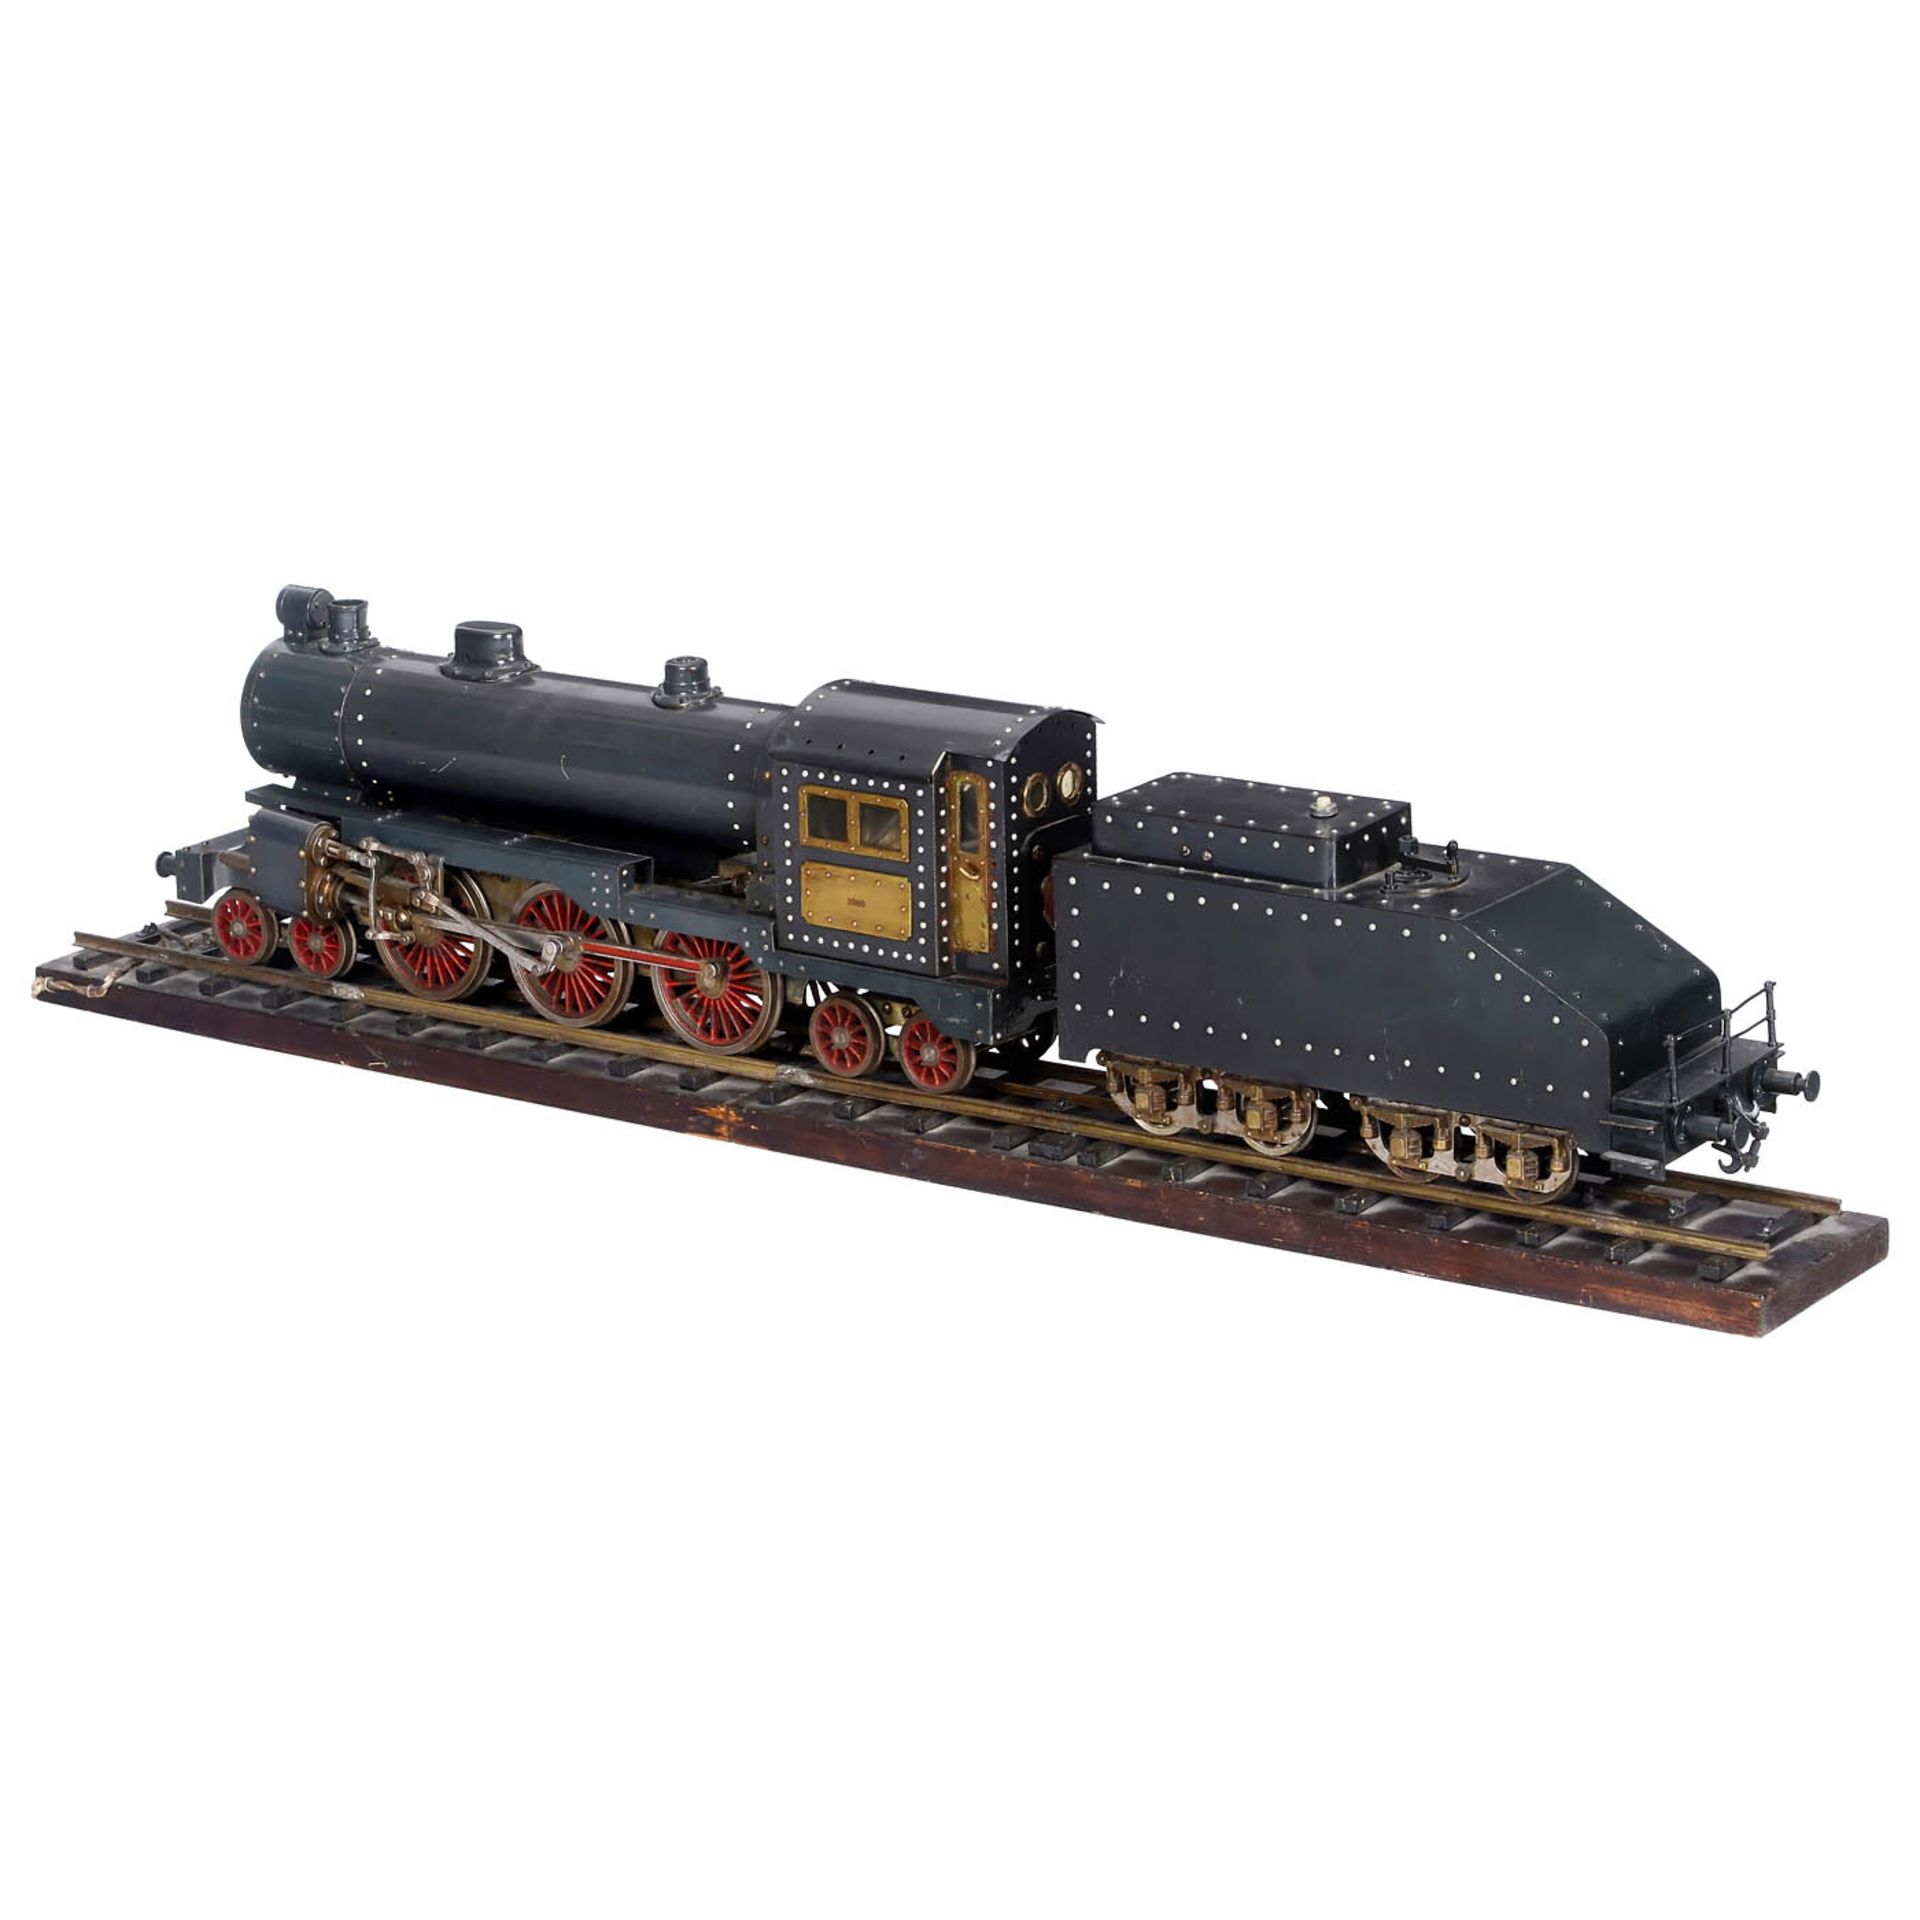 Schlepptender-Dampflokomotive im Maßstab 1:20,3, um 1950 Spurweite F (70,64 mm) nach Norm der - Image 2 of 5